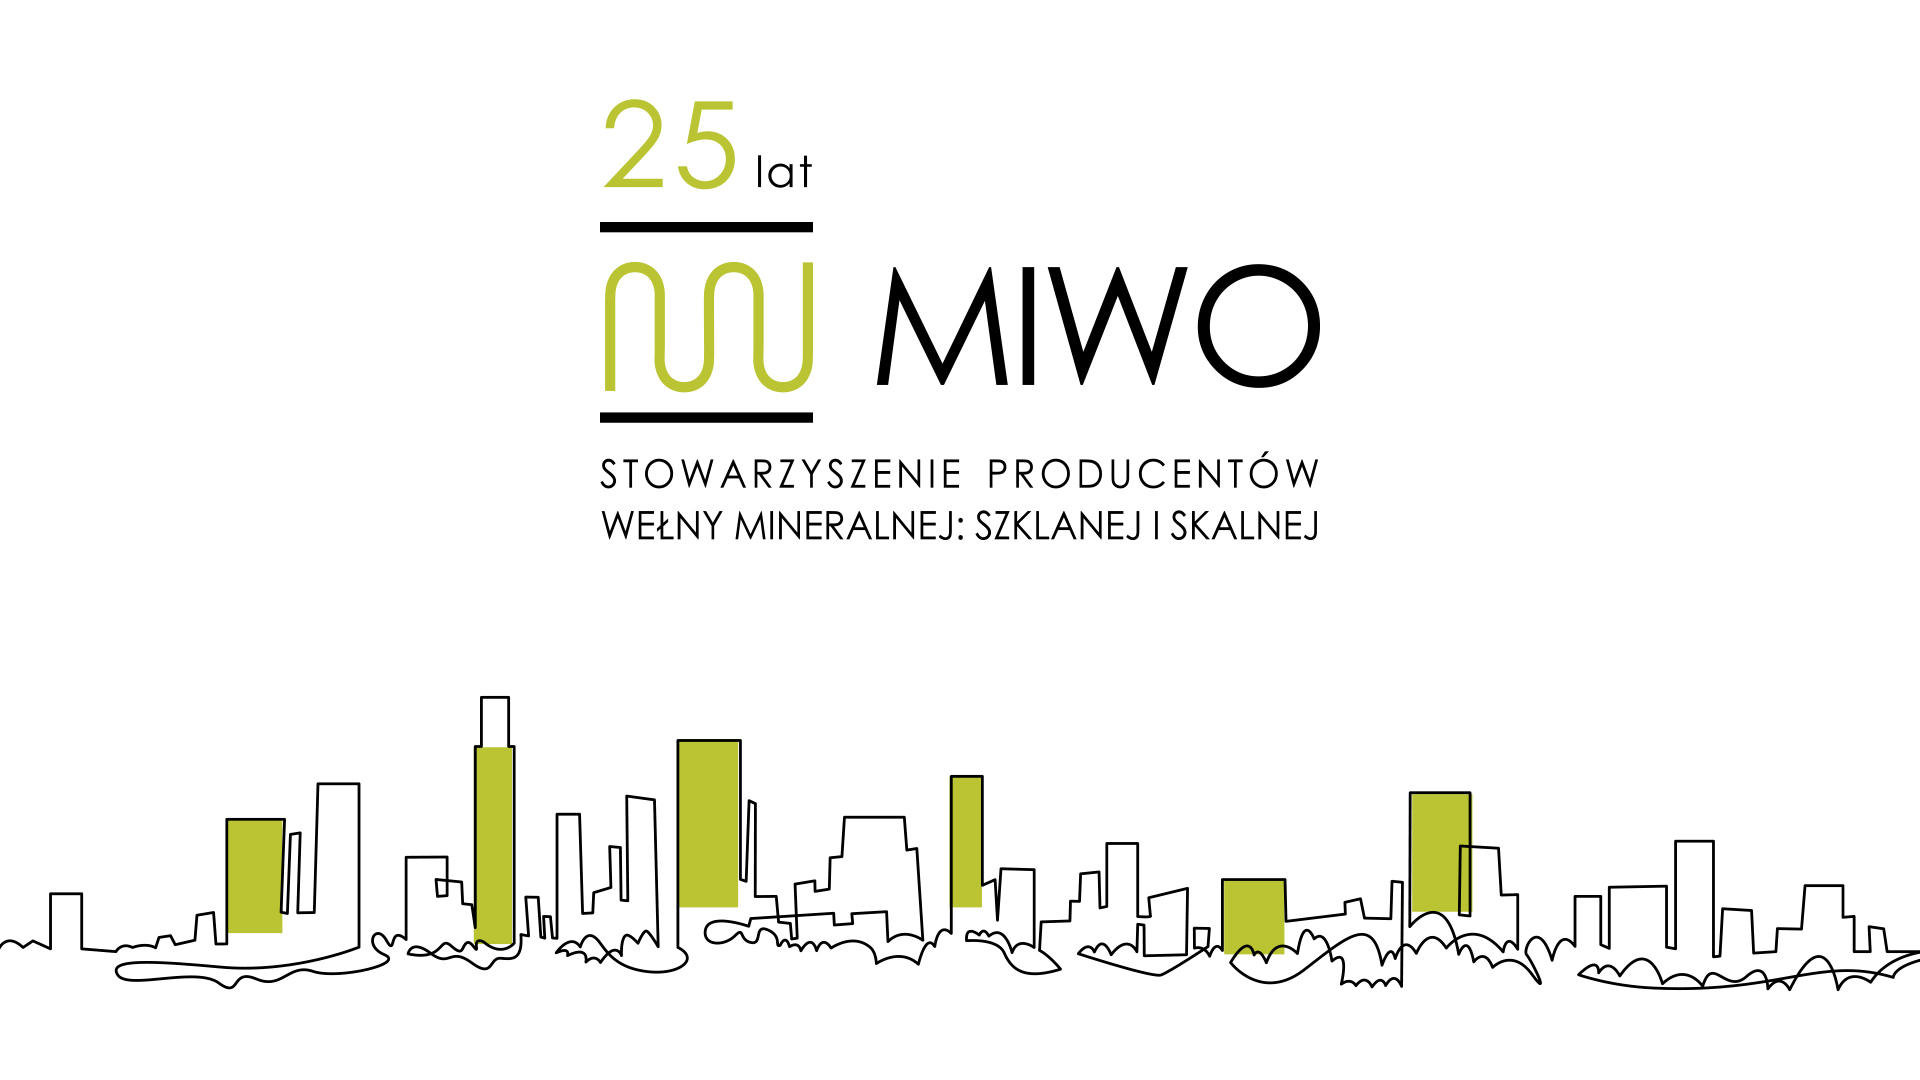 Wciąż bardzo aktywni i zaangażowani – Stowarzyszenie MIWO działa już 25 lat!